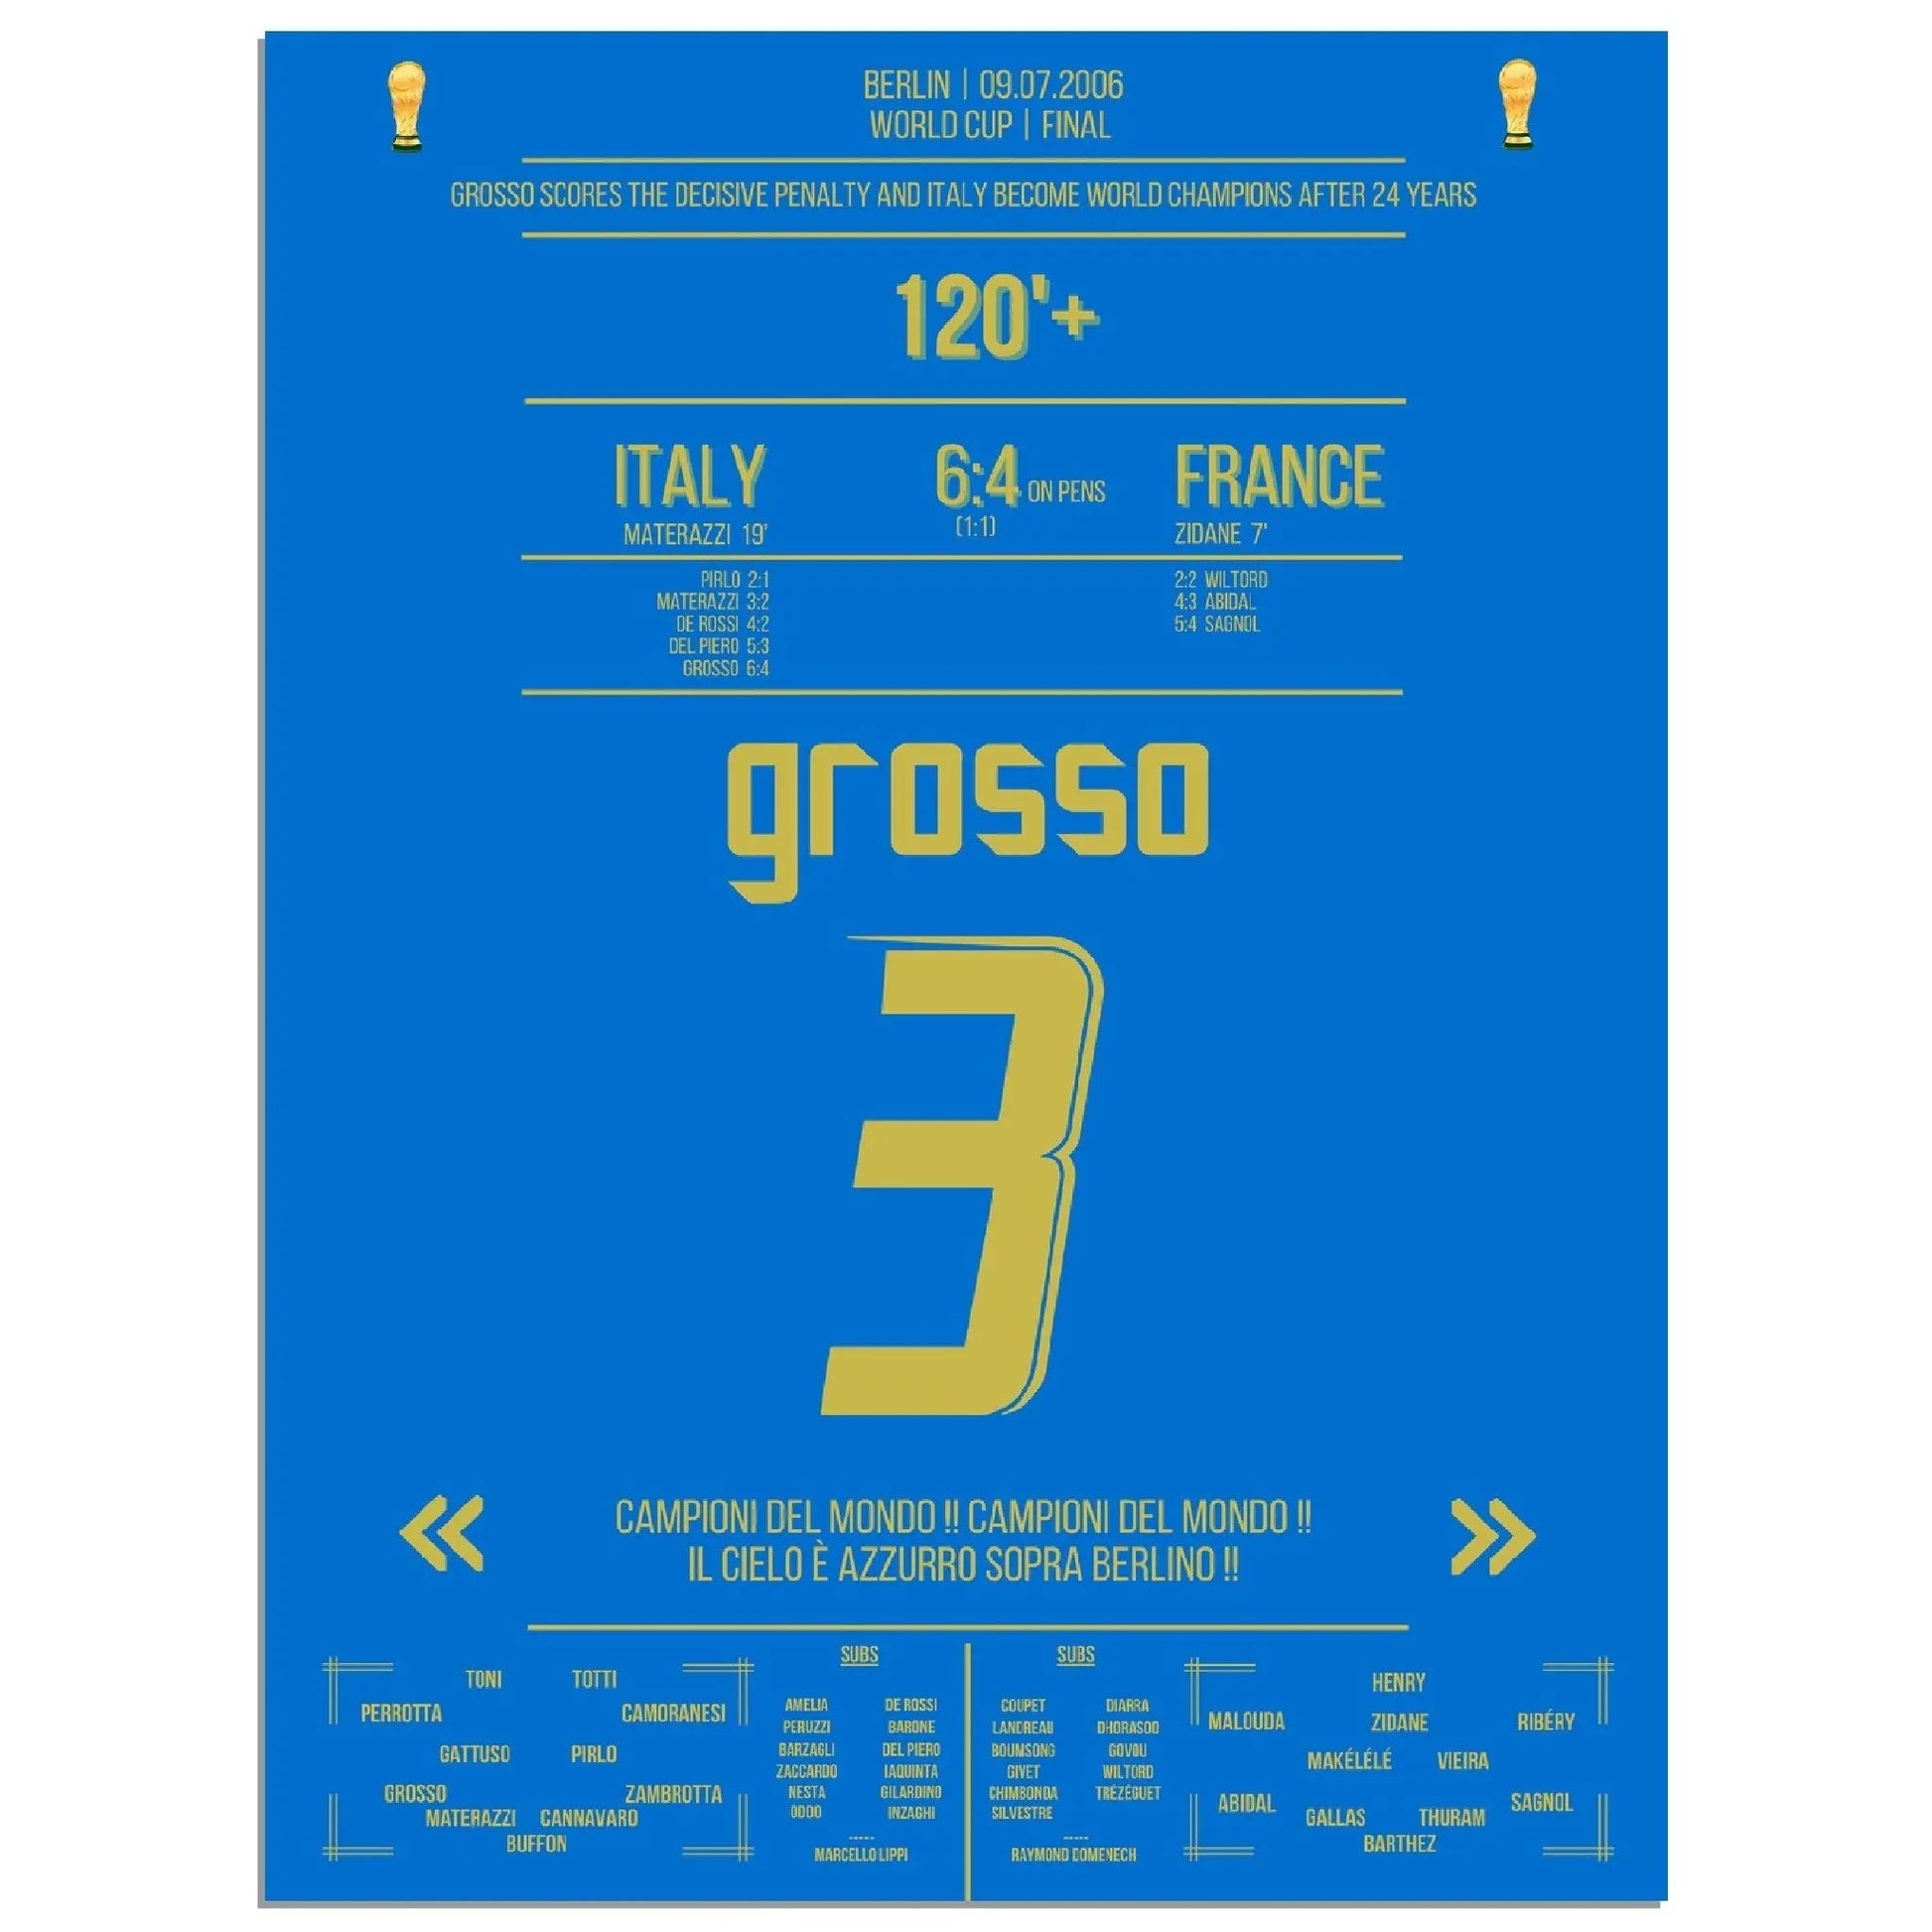 Grosso der ultimative Held Italiens WM Finale 2006 Italien - Frankreich 